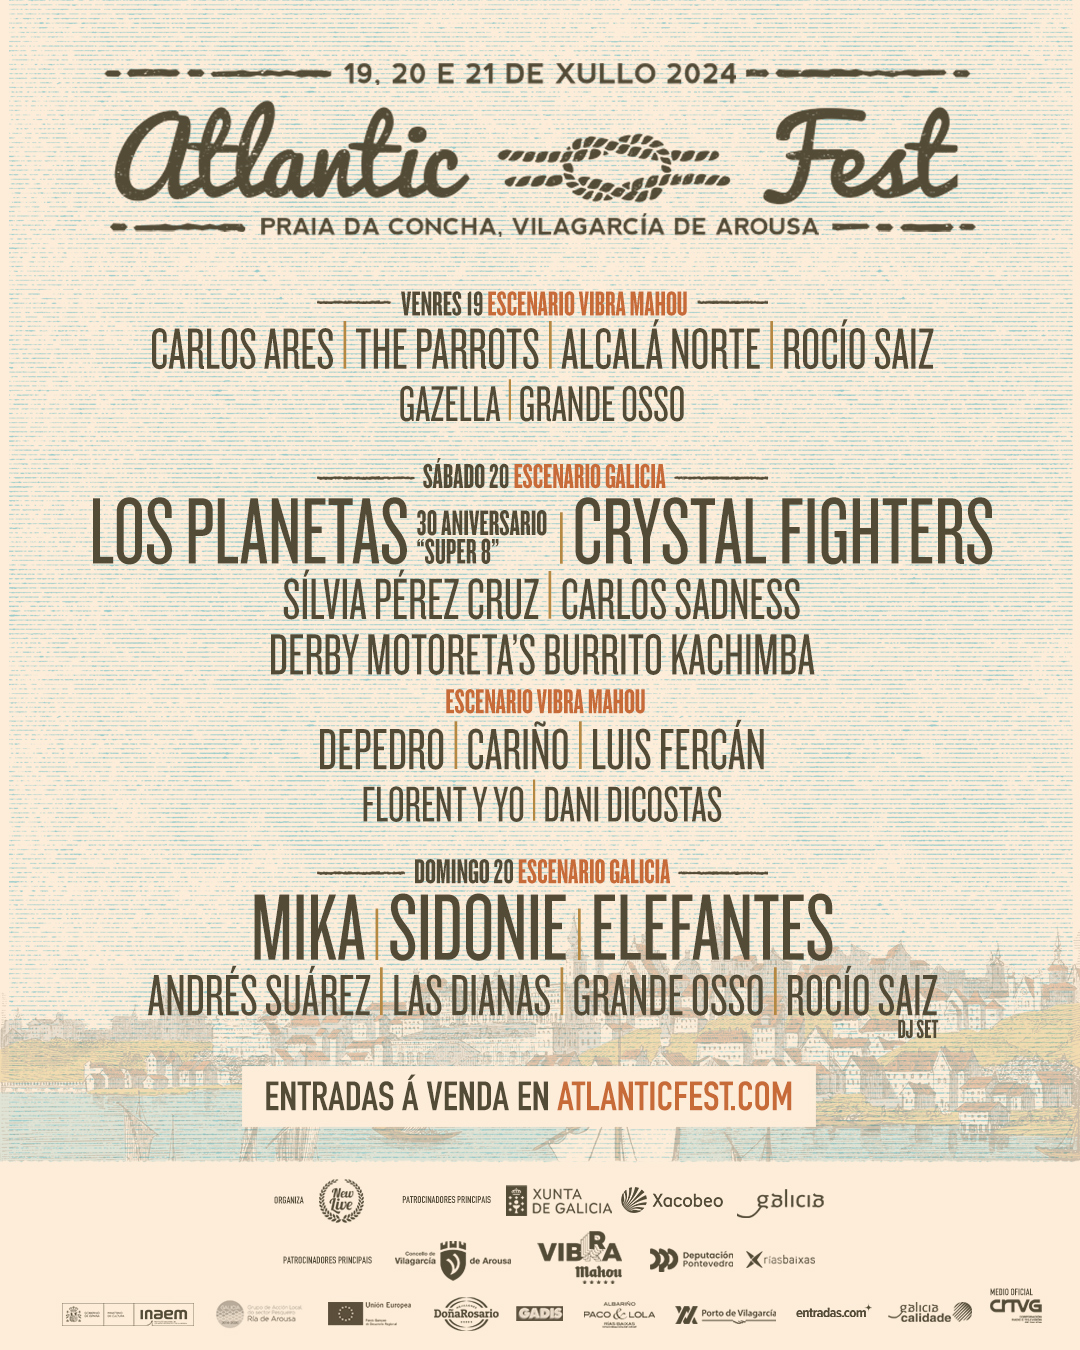 cartel completo del atlantic fest 2024, en julio en Vilagarcía de Arousa